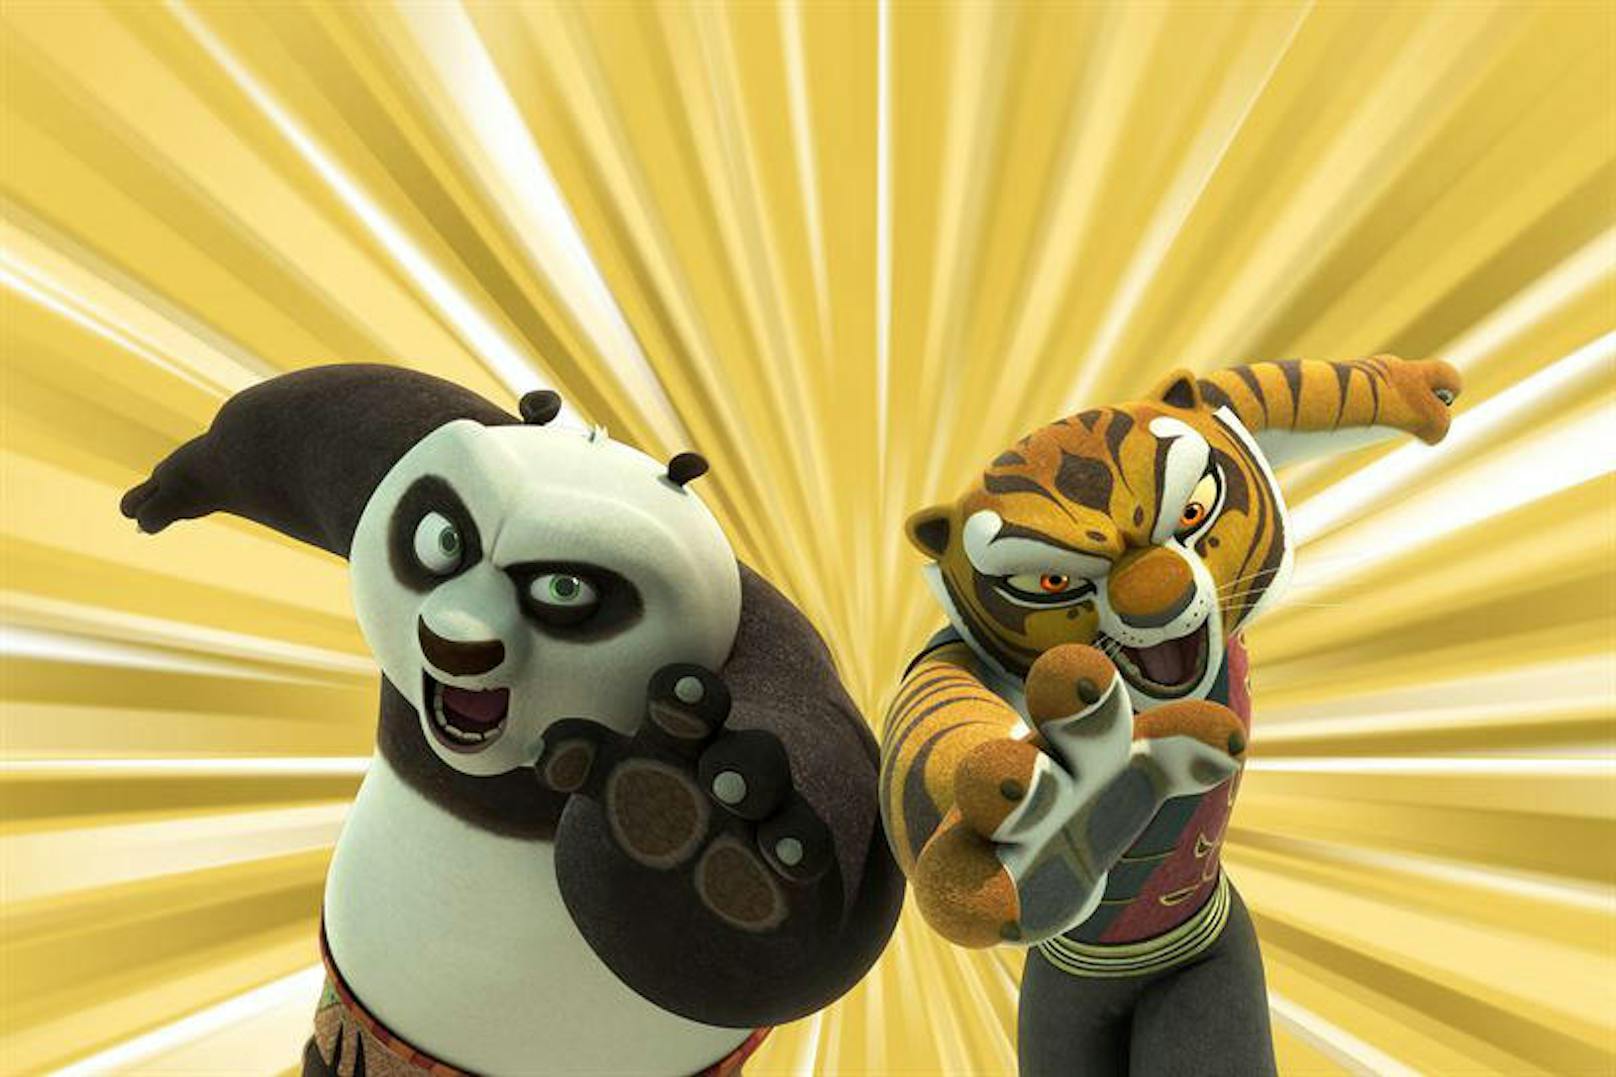 Kung fu Panda (2008)